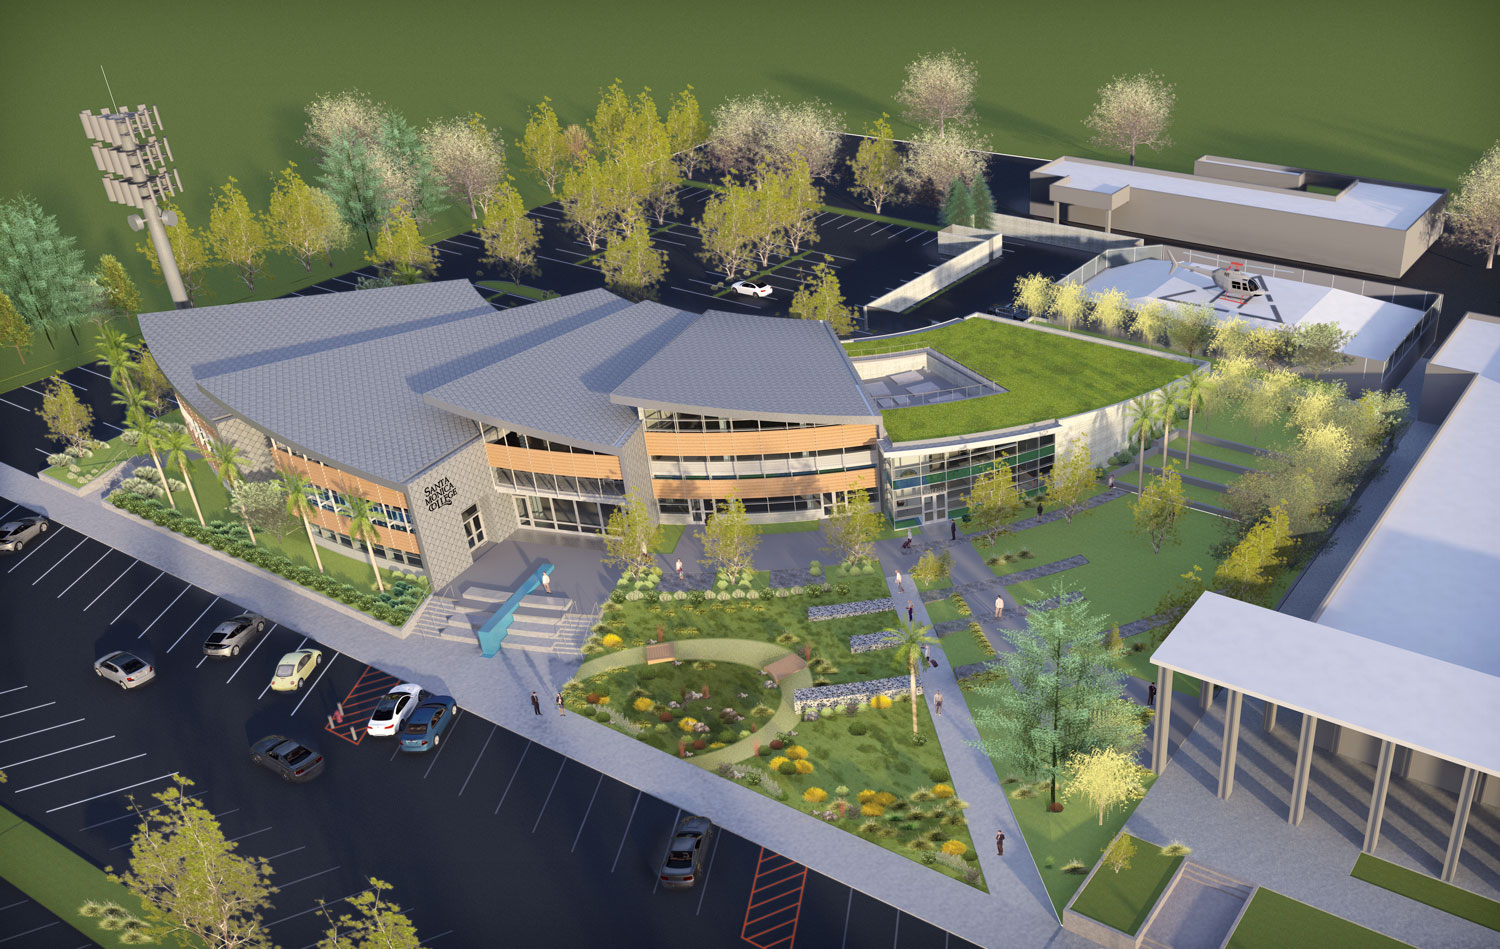 SMC’s new Malibu Campus architectural rendering